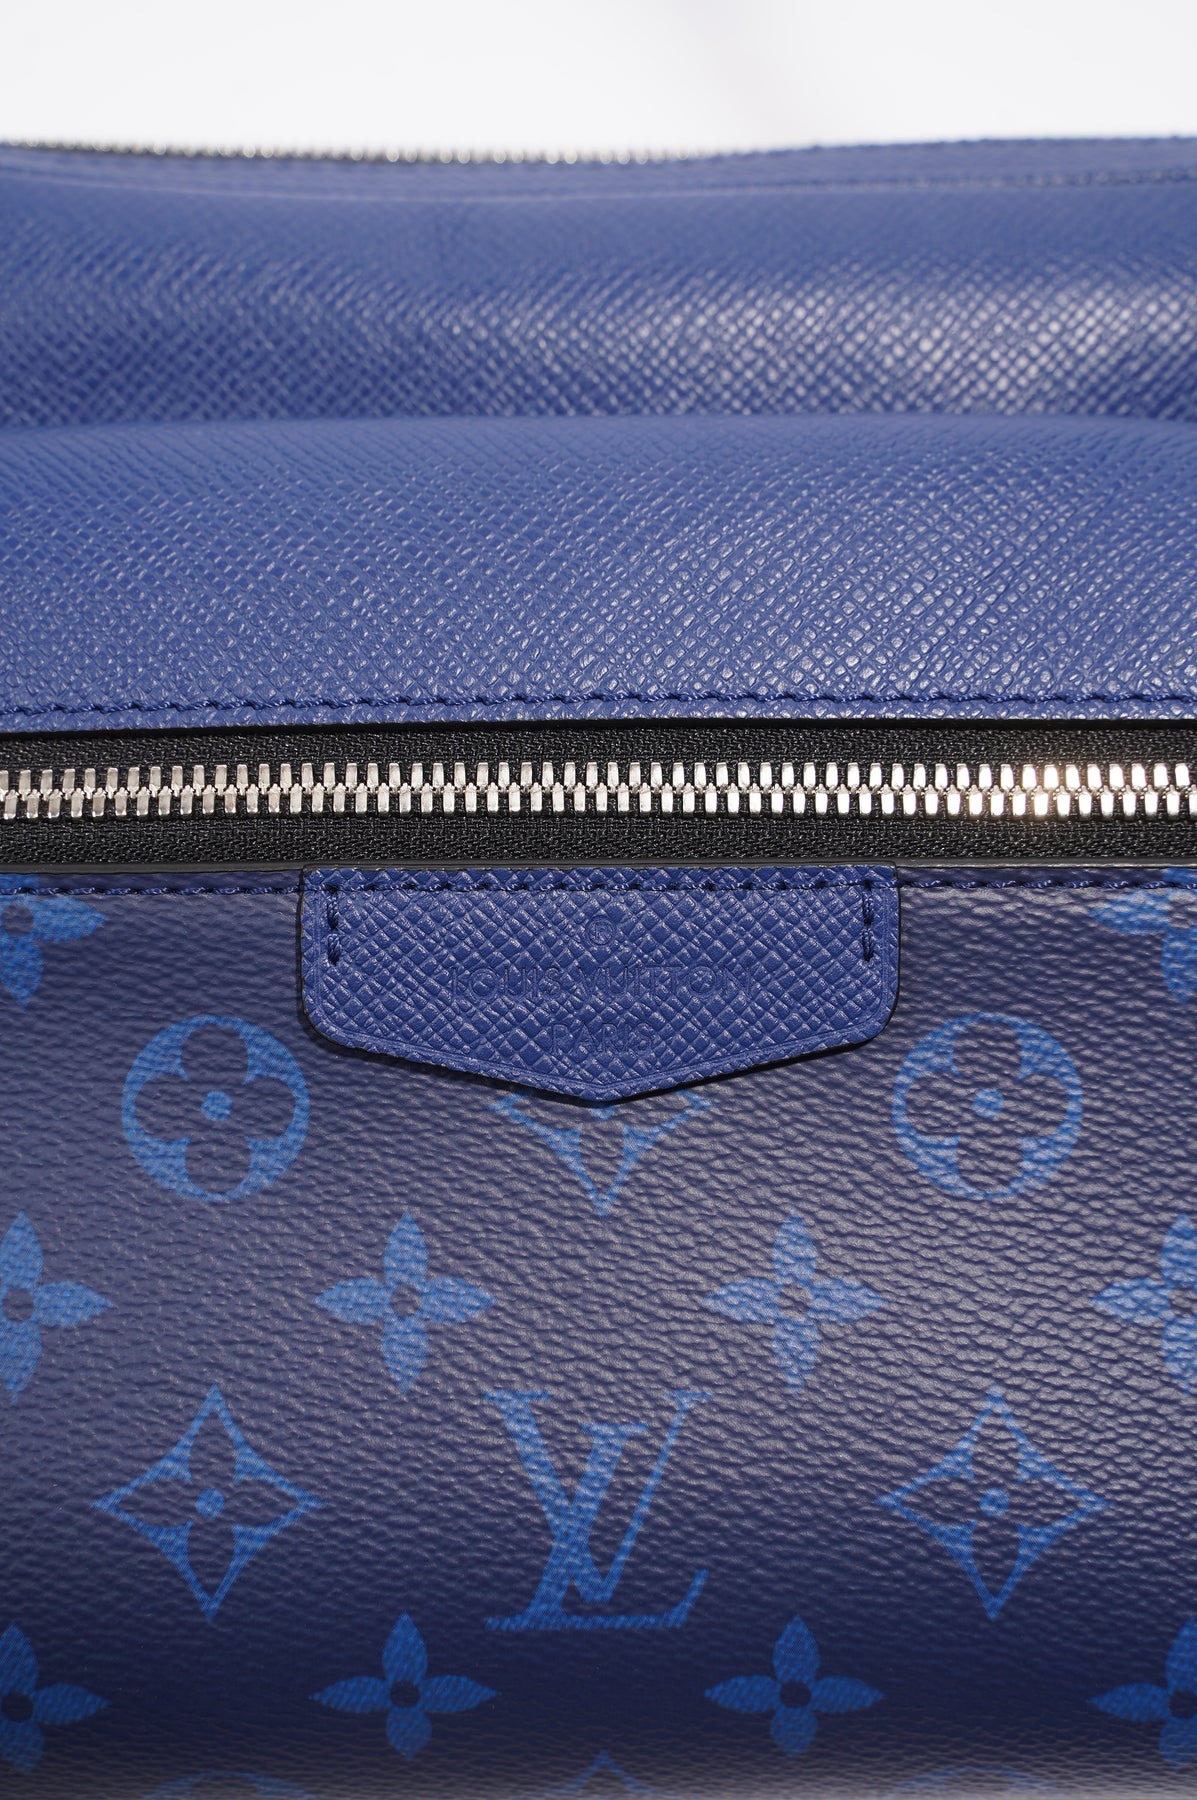 Louis Vuitton Outdoor Messenger Blue Taiga Monogram Silver